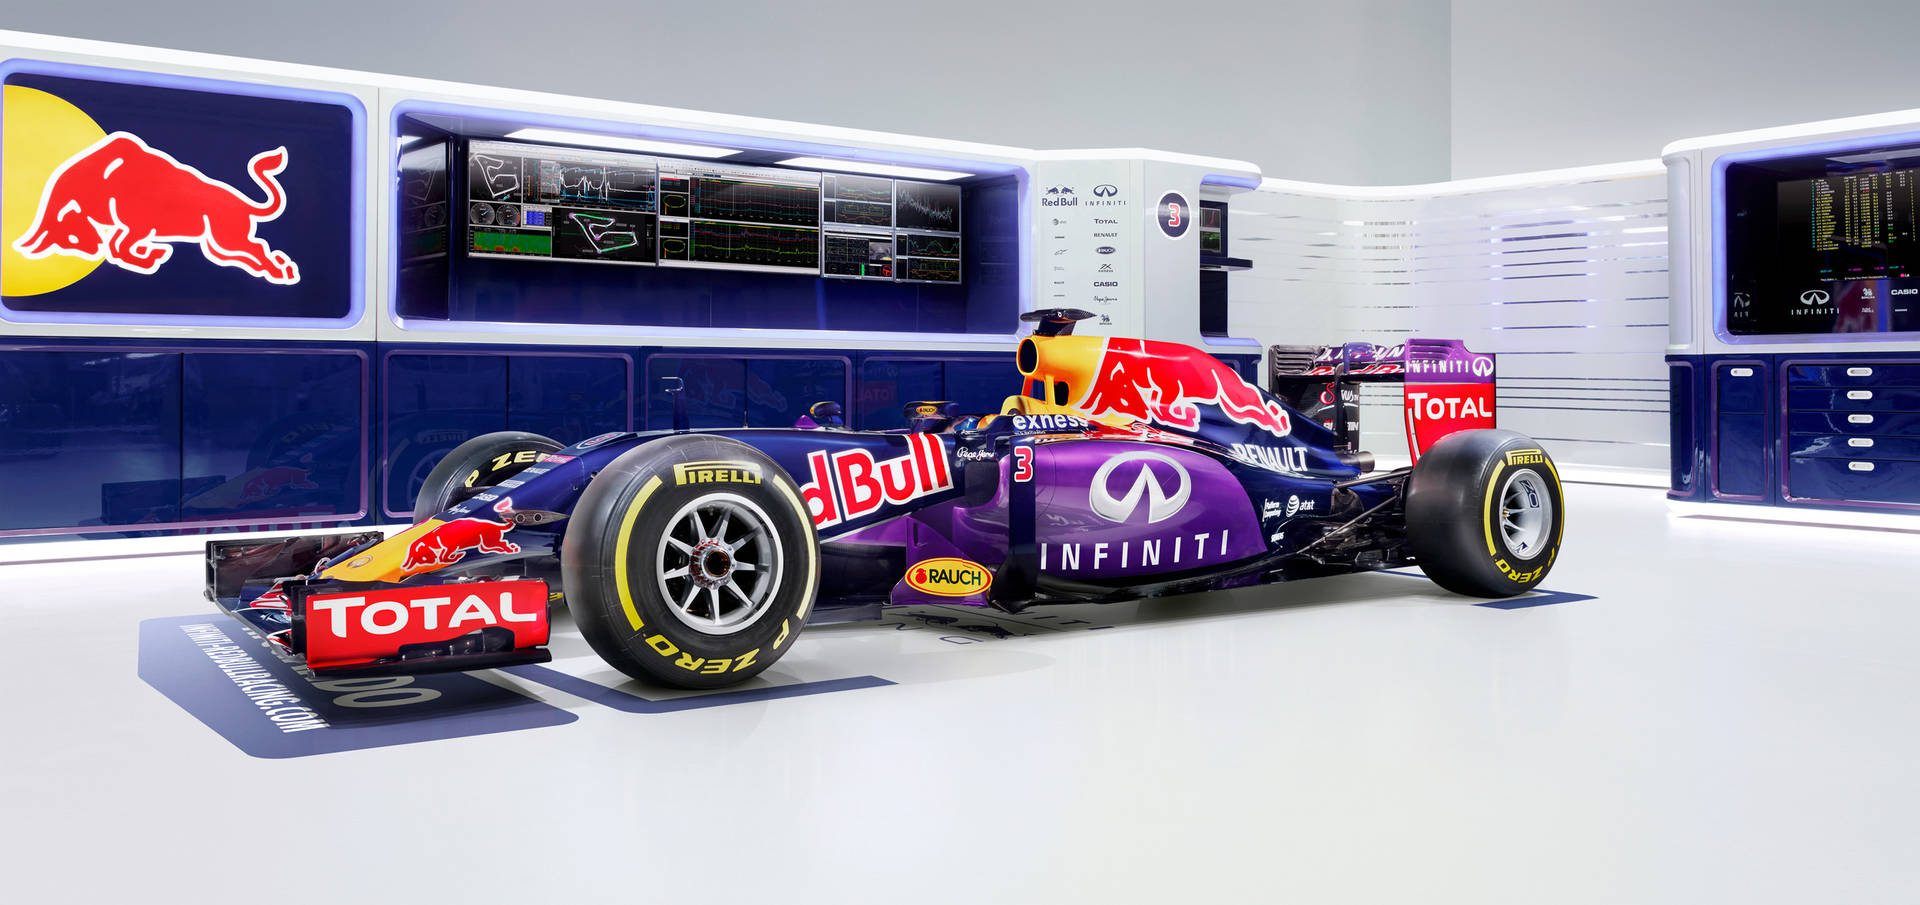 Red Bull Racing Infiniti Sponsor Wallpaper